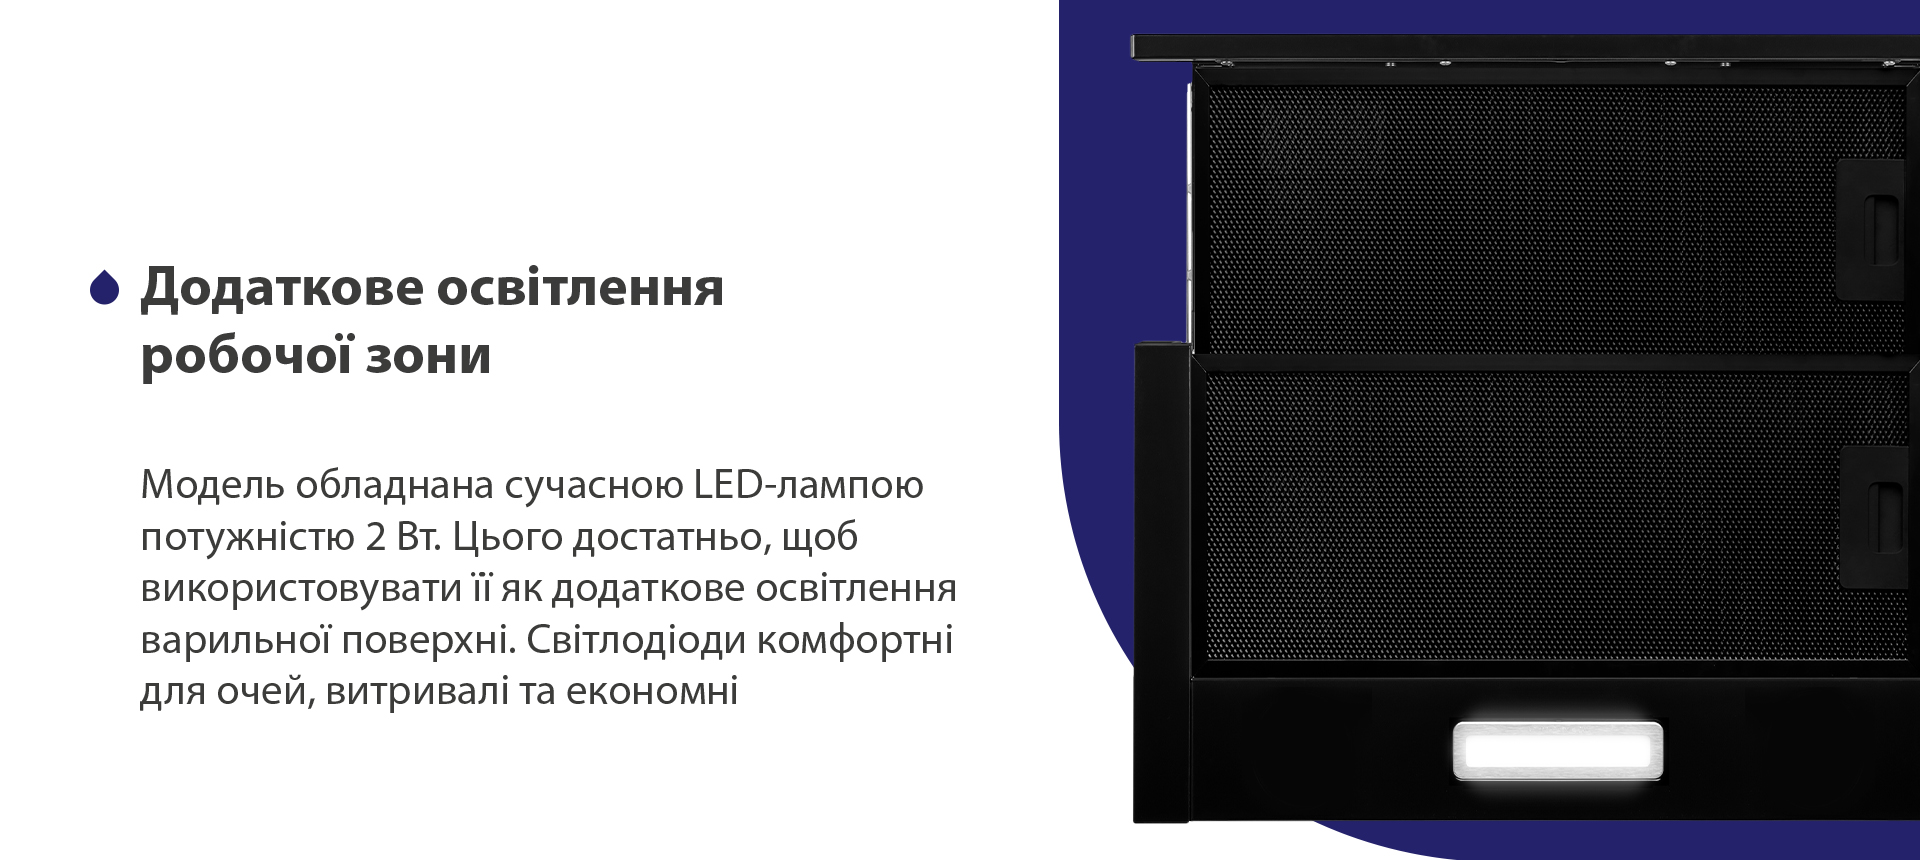 Модель обладнана сучасною LED-лампою потужністю 2 Вт. Цього достатньо, щоб використовувати її як додаткове освітлення варильної поверхні. Світлодіоди комфортні для очей, витривалі та економні